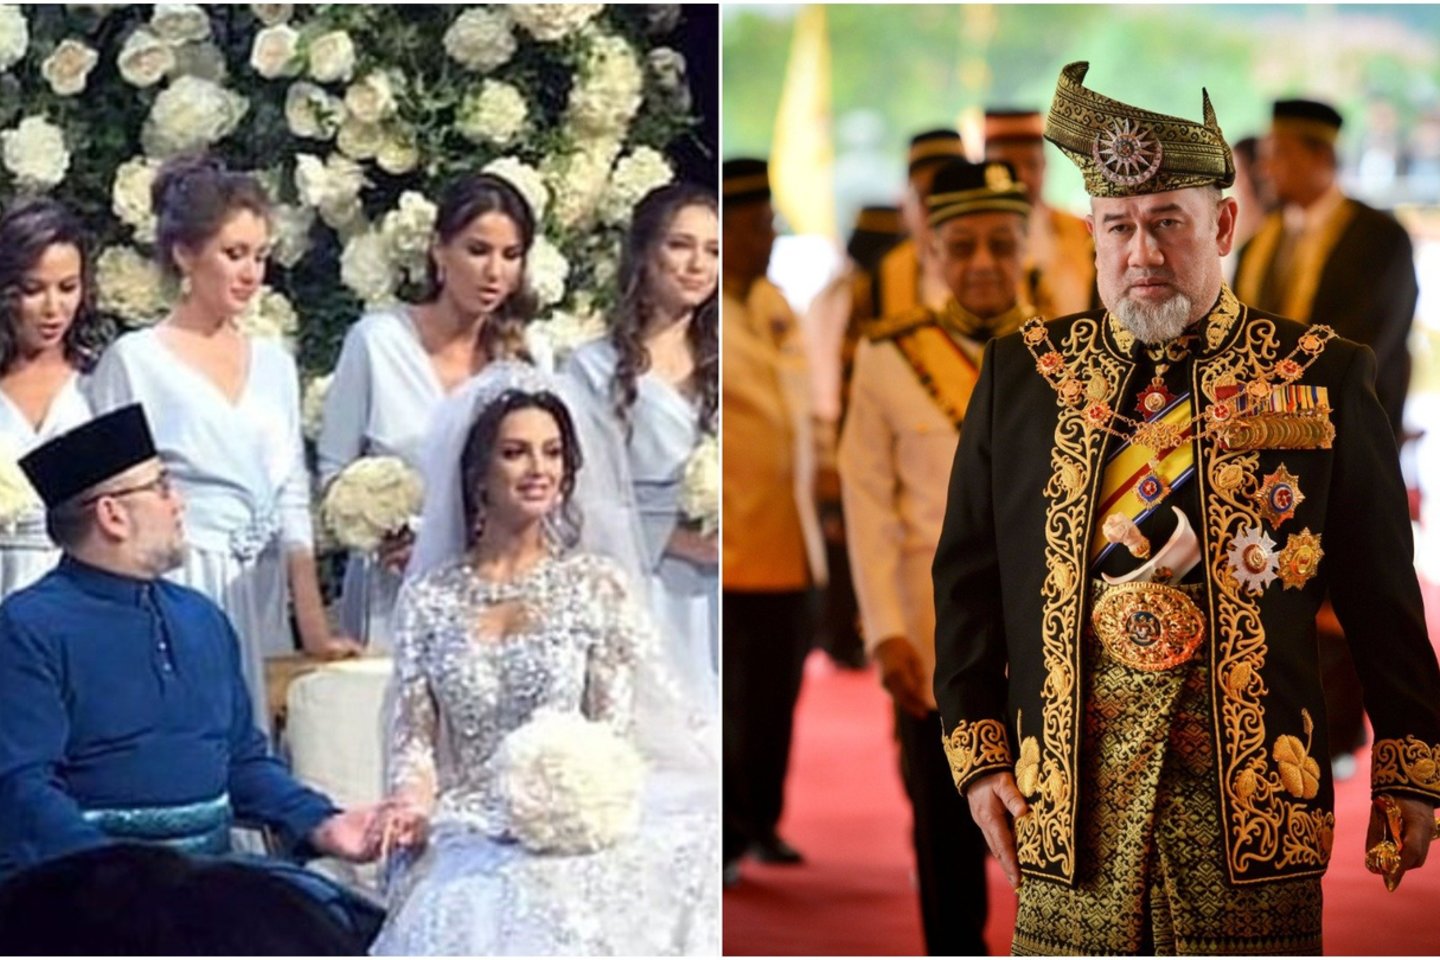  Teigiama, kad šioje vestuvių nuotraukoje - sultonas Muhammadas V.